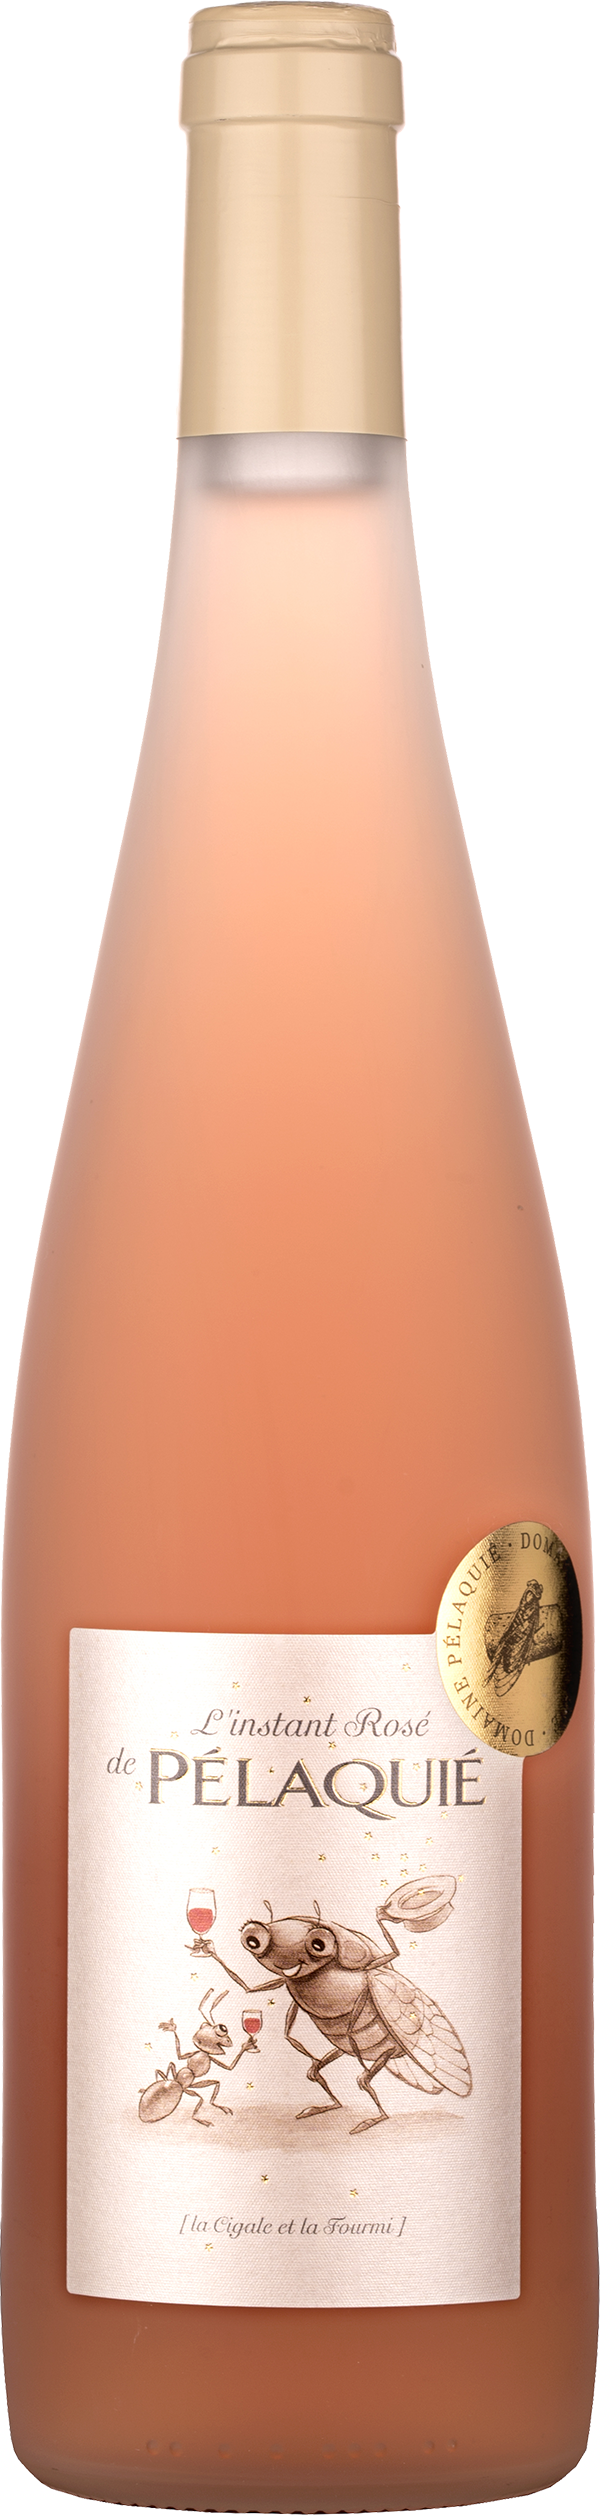 Côtes du Rhône - L'instant Rosé - 2018